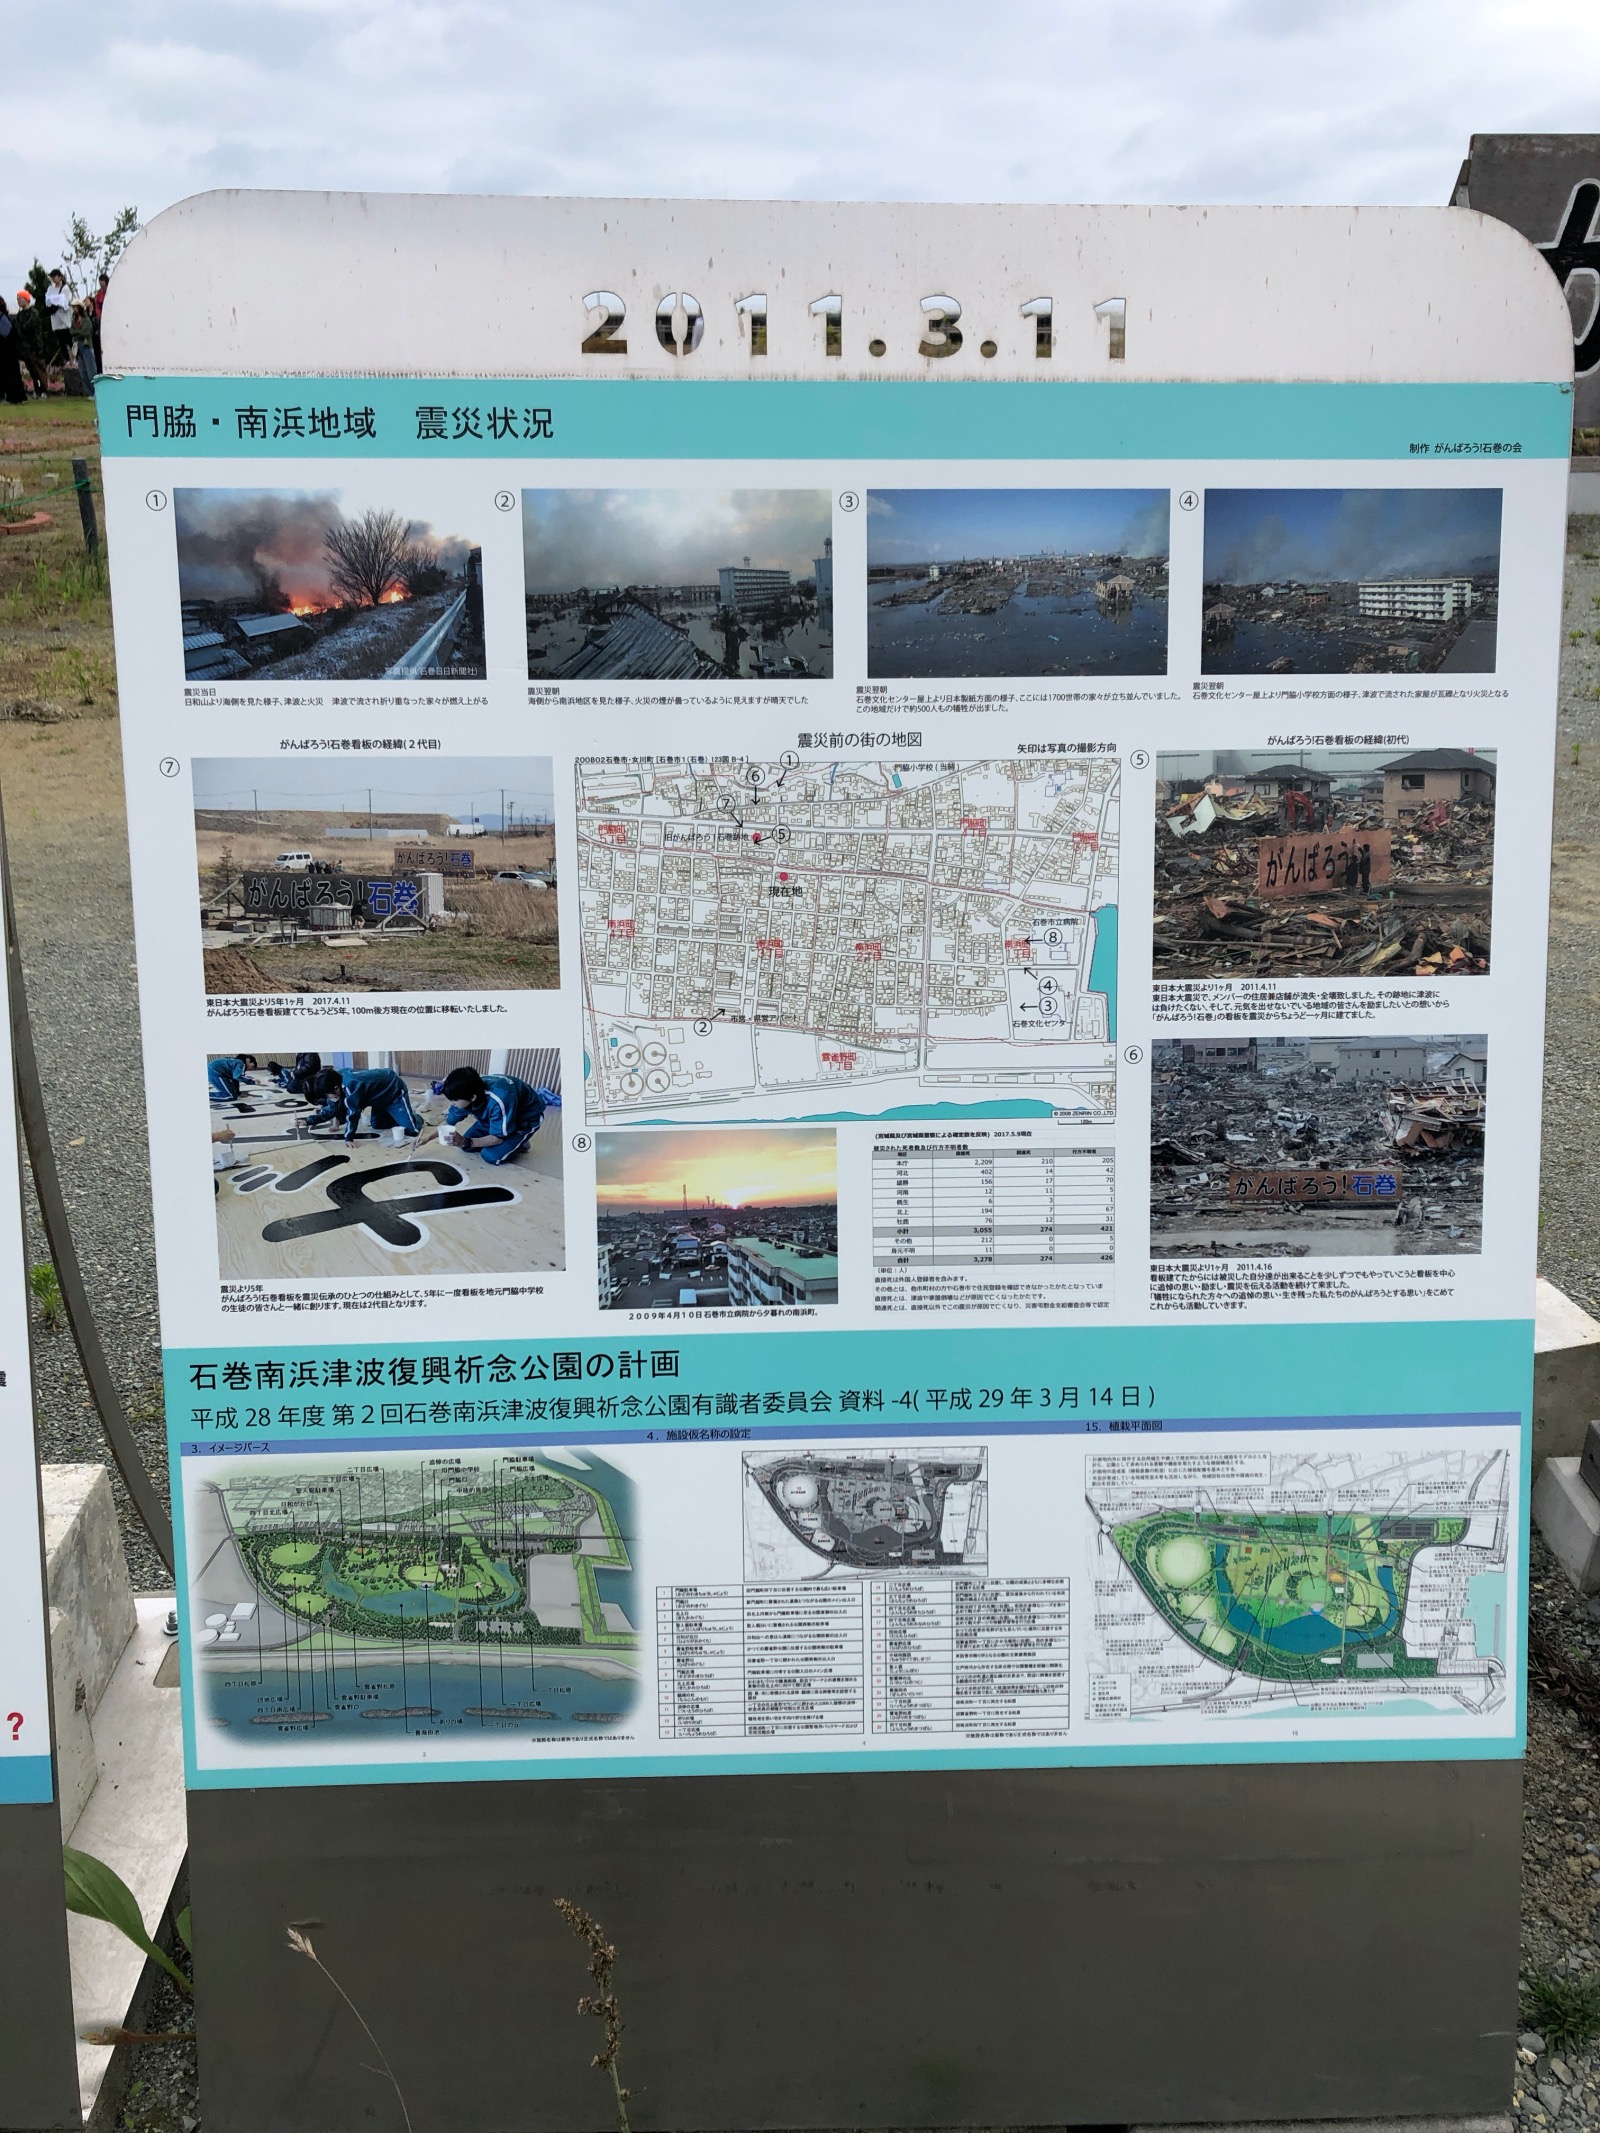 Eine Gedenktafel informiert über die Folgen des Tsunamis und die neuen Projekte.